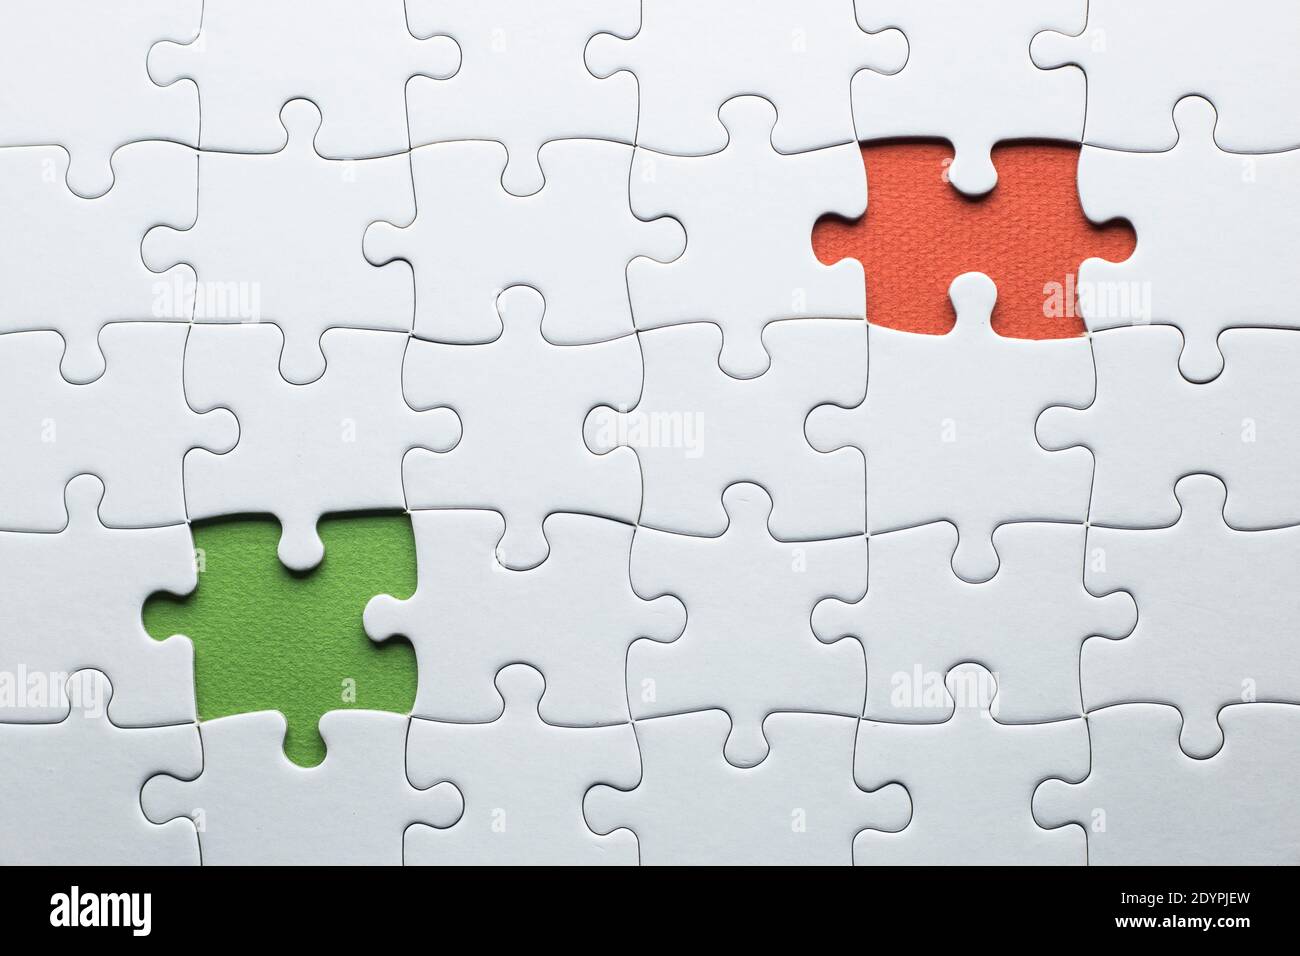 Ein Puzzle fehlt zwei Stücke in verschiedenen Farben abgeschlossen werden. Weiße Stücke und ein Stück in grün und ein in orange Text hinzuzufügen Stockfoto